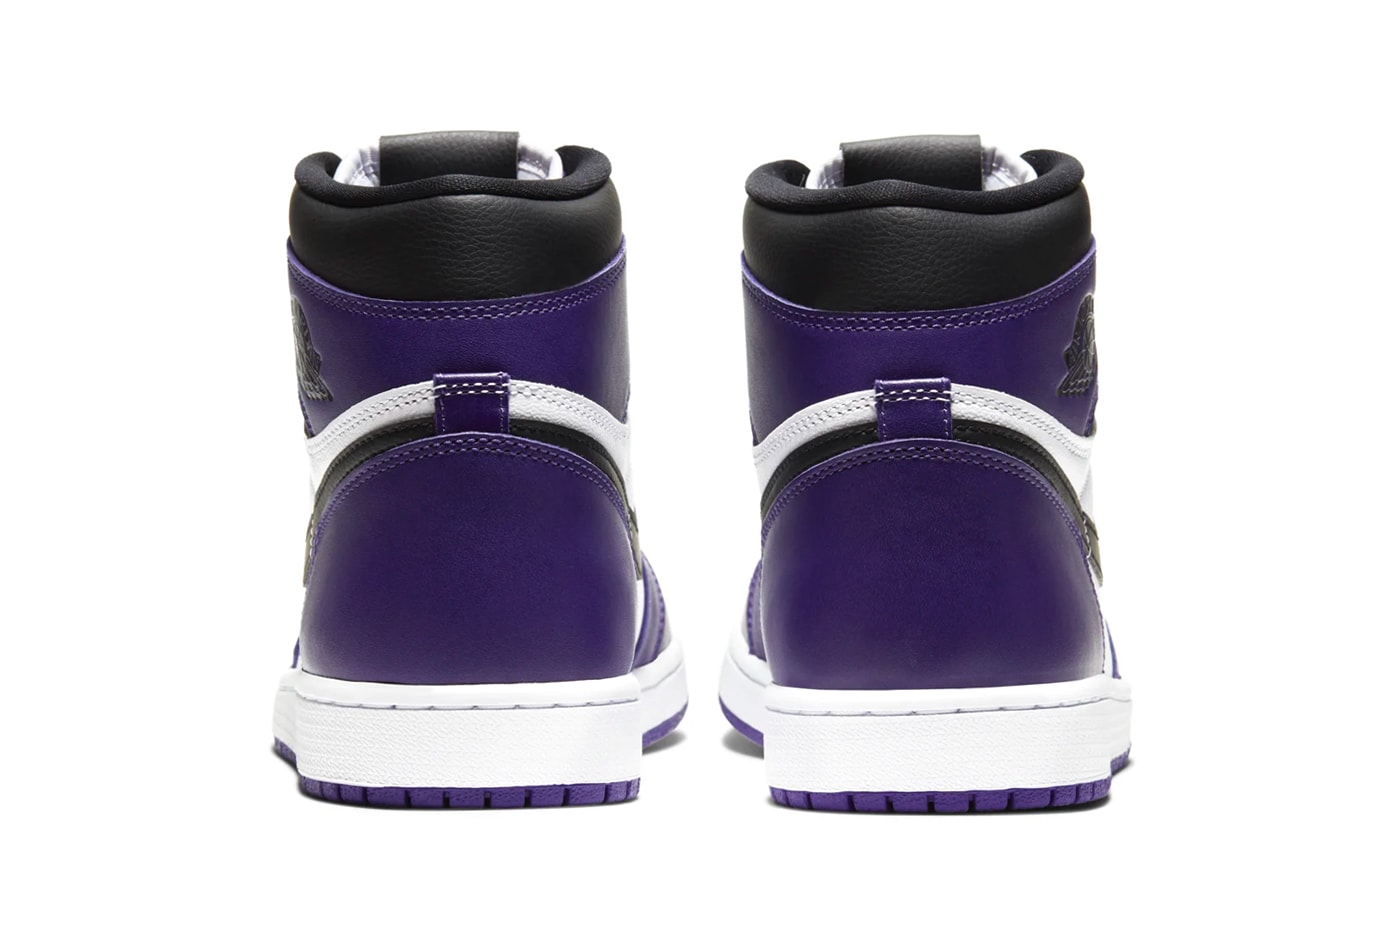 Air Jordan 1 Retro High OG Court Purple Official Look 555088-500 Release Info Black White Brand 575441-500